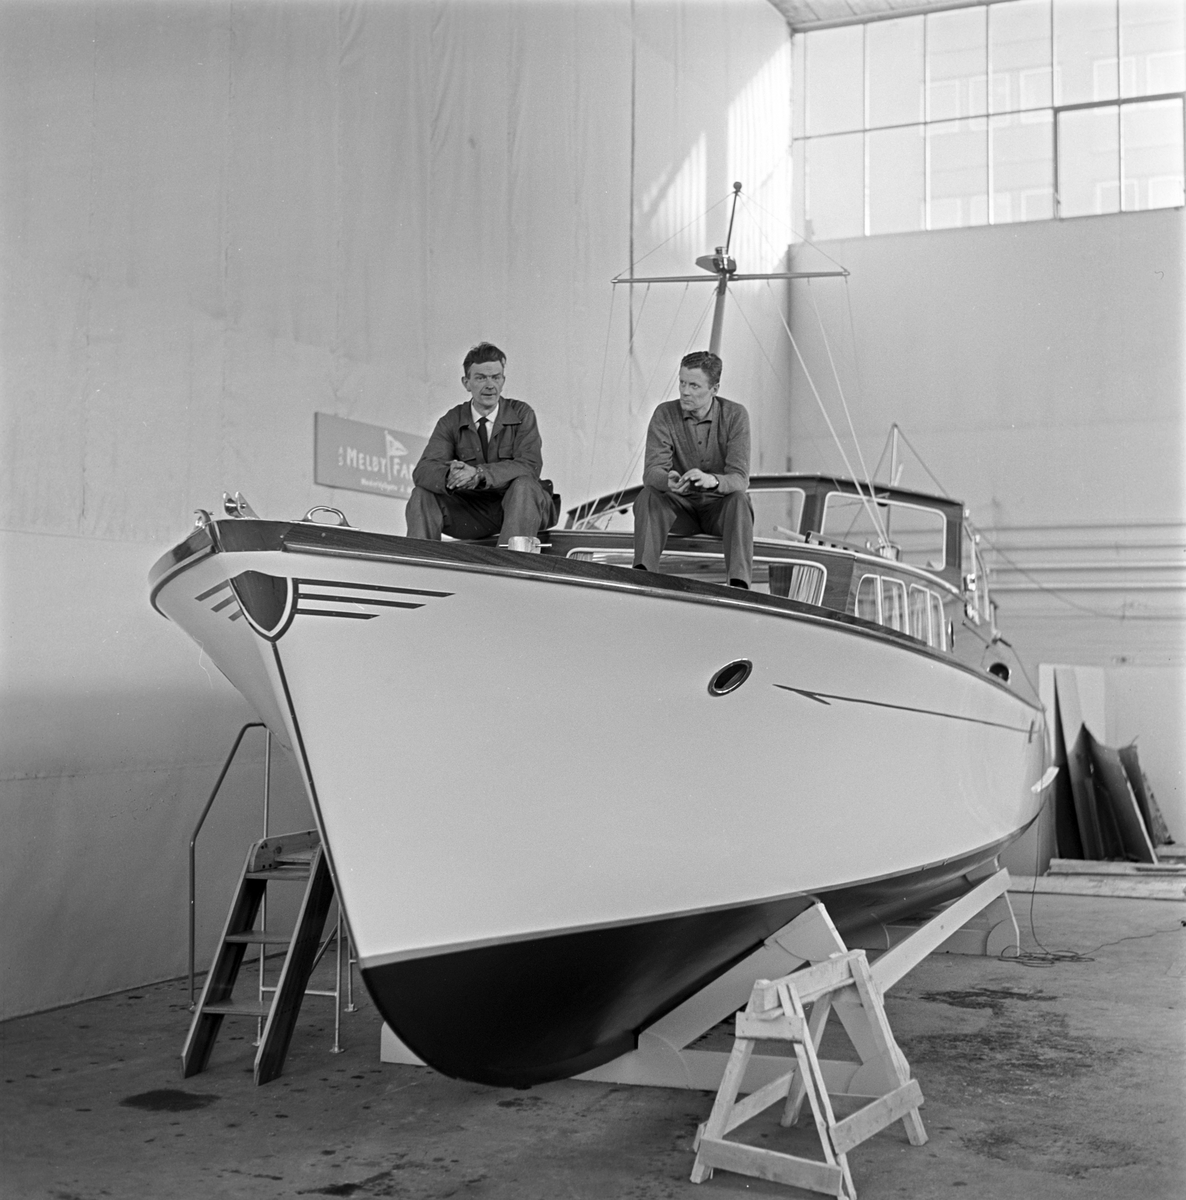 Serie. Båtutstilling med bla. et amfibisk kjøretøy, Göteborg, Sverige. Fotografert mars 1963.